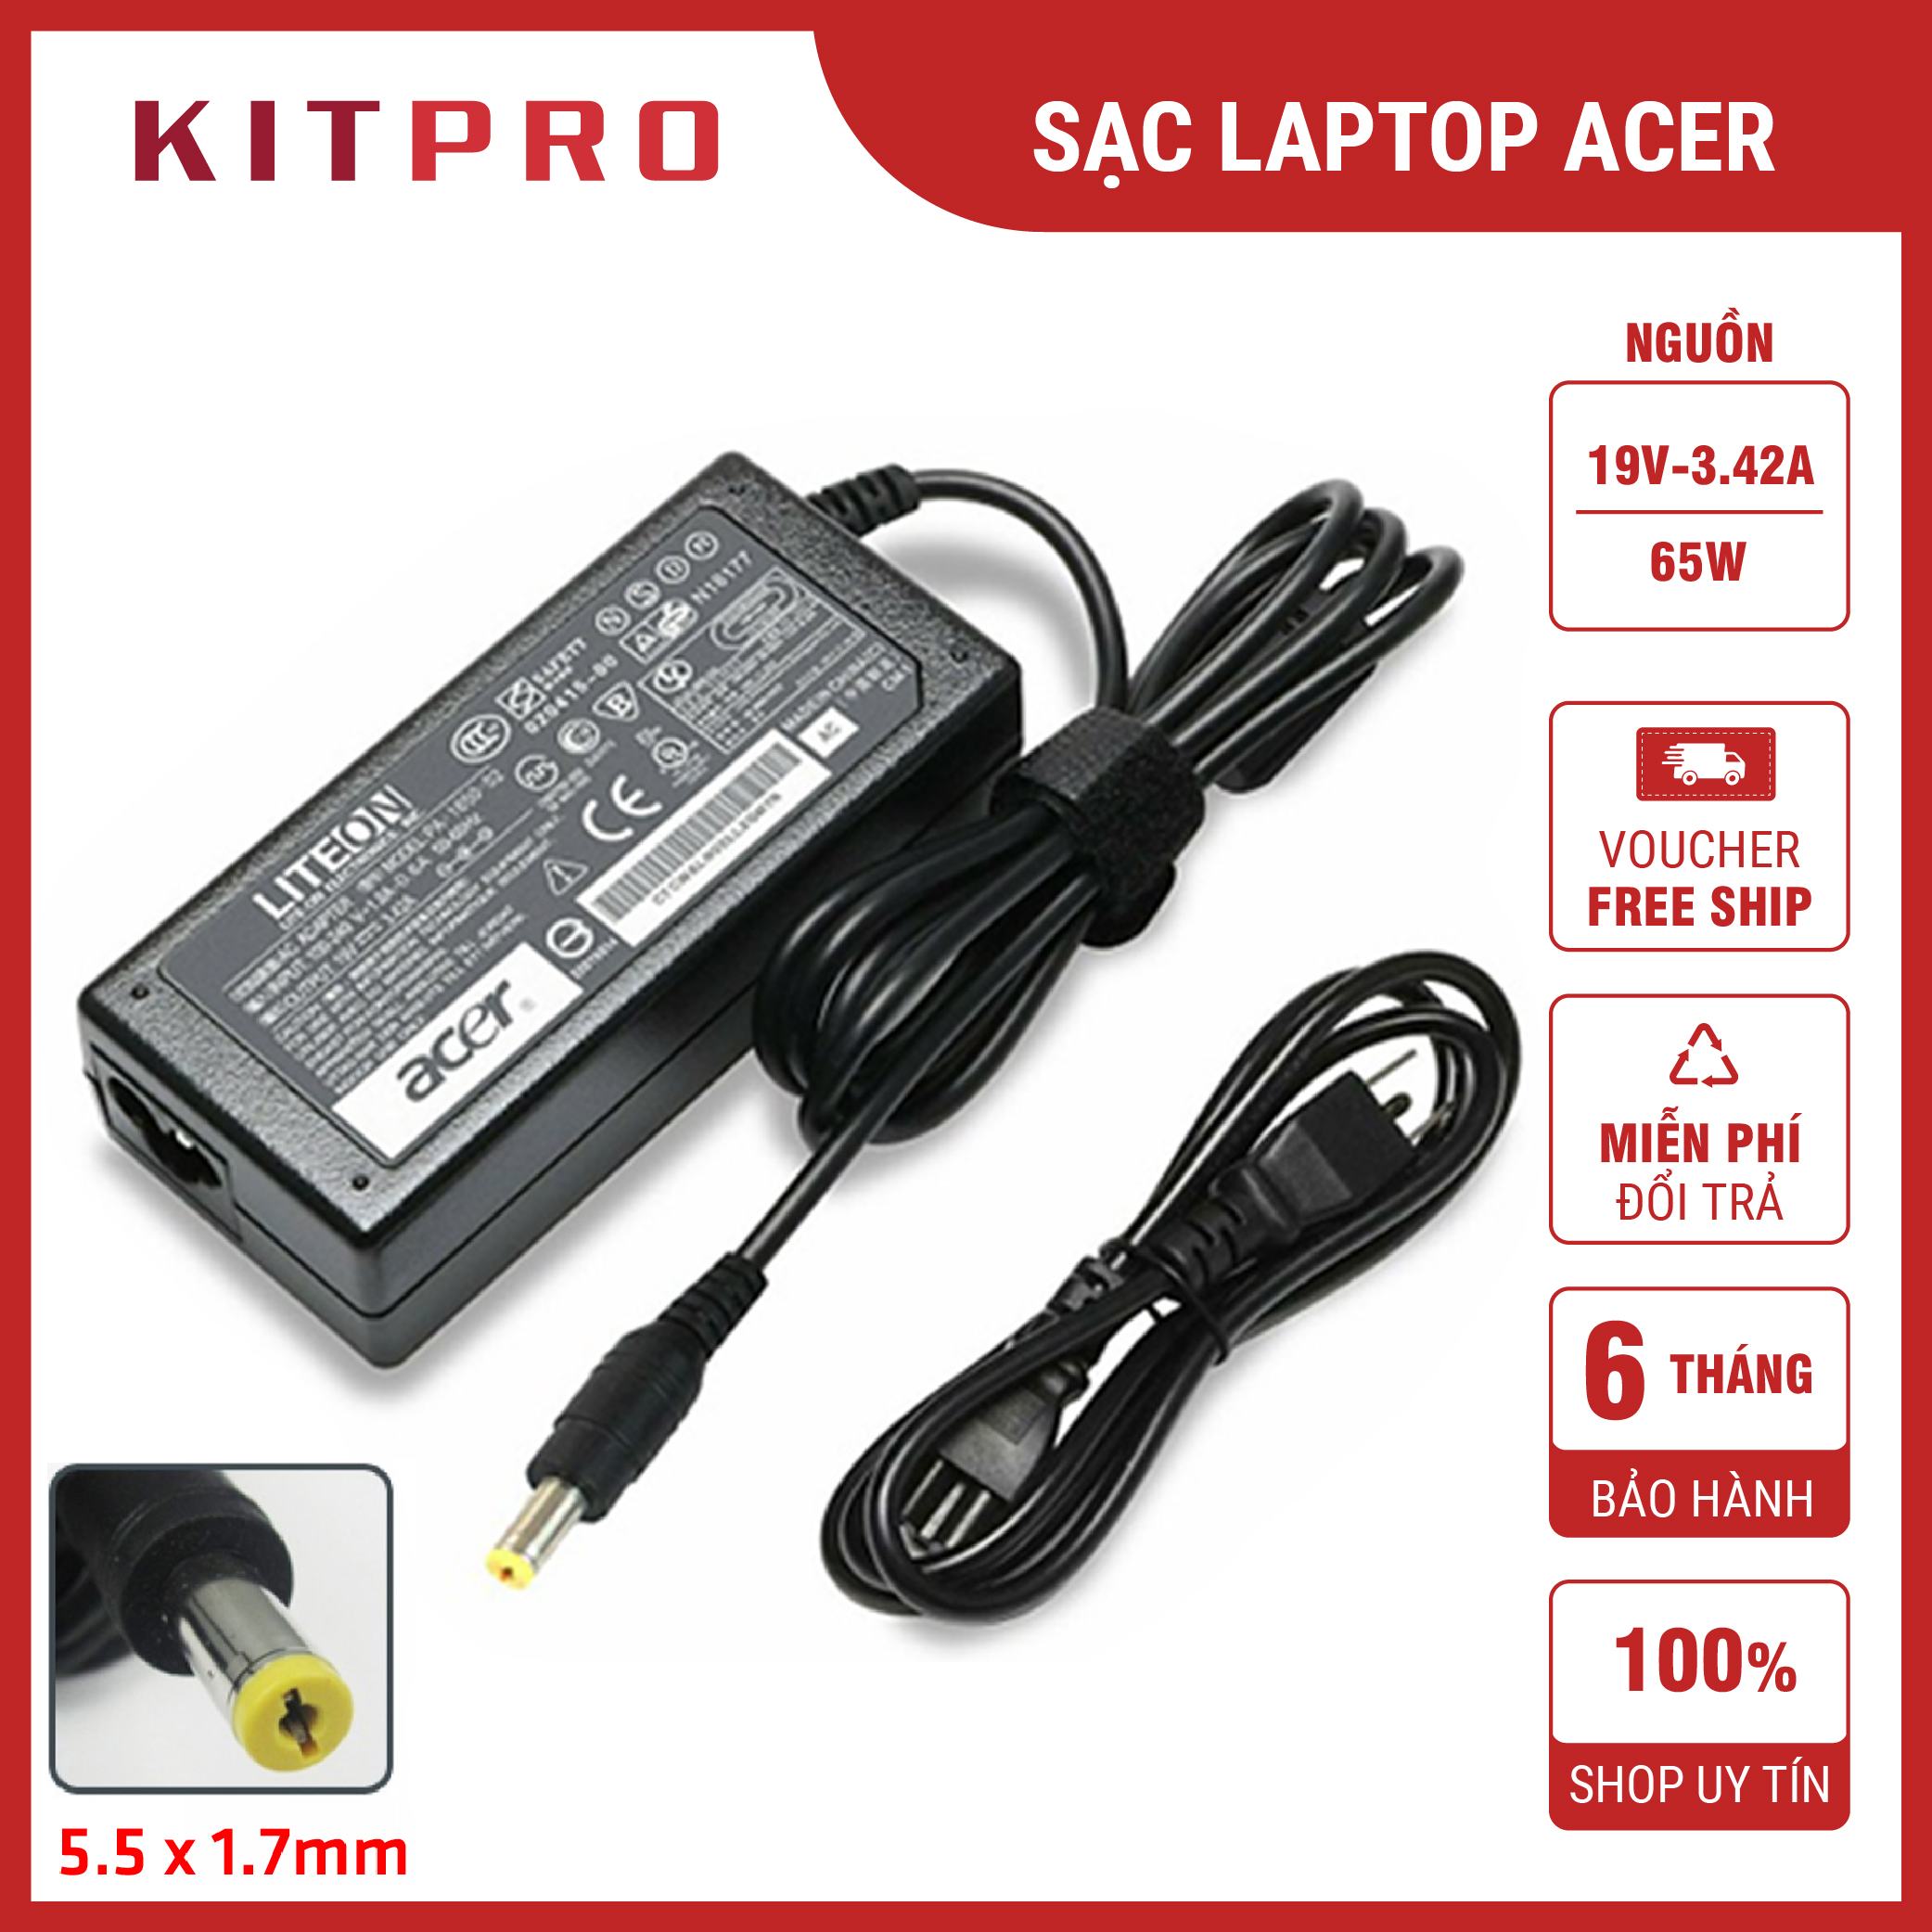 Sạc laptop Acer 19V 3.42A 4.74A 2.37A dây sạc máy tính Acer Aspire Travelmate chuôi cắm 5.5 x 1.7mm nguồn 45w 65w 90w ship hỏa tốc KITPRO